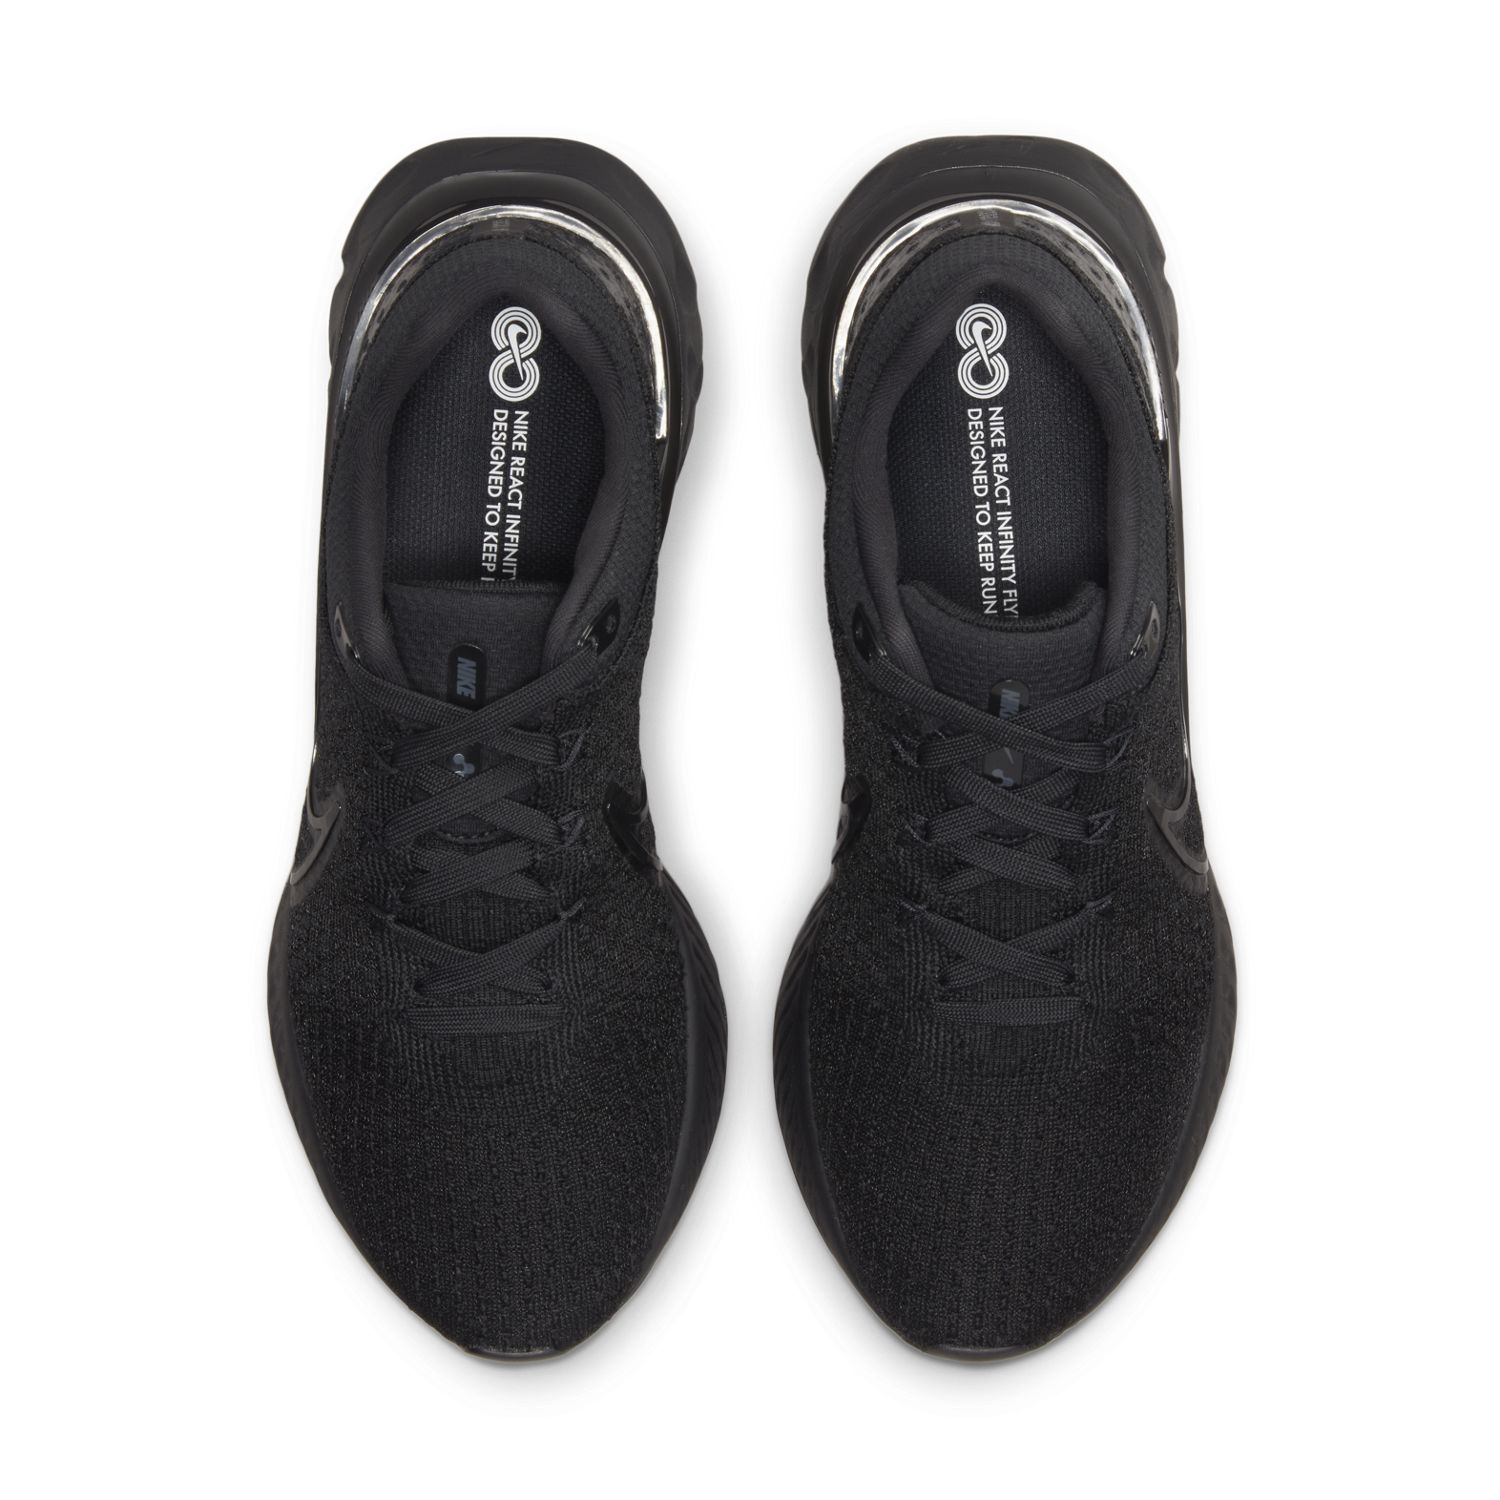 Mens Nike React Infinity Run Fk 3 - The Running Company - Running Shoe ...